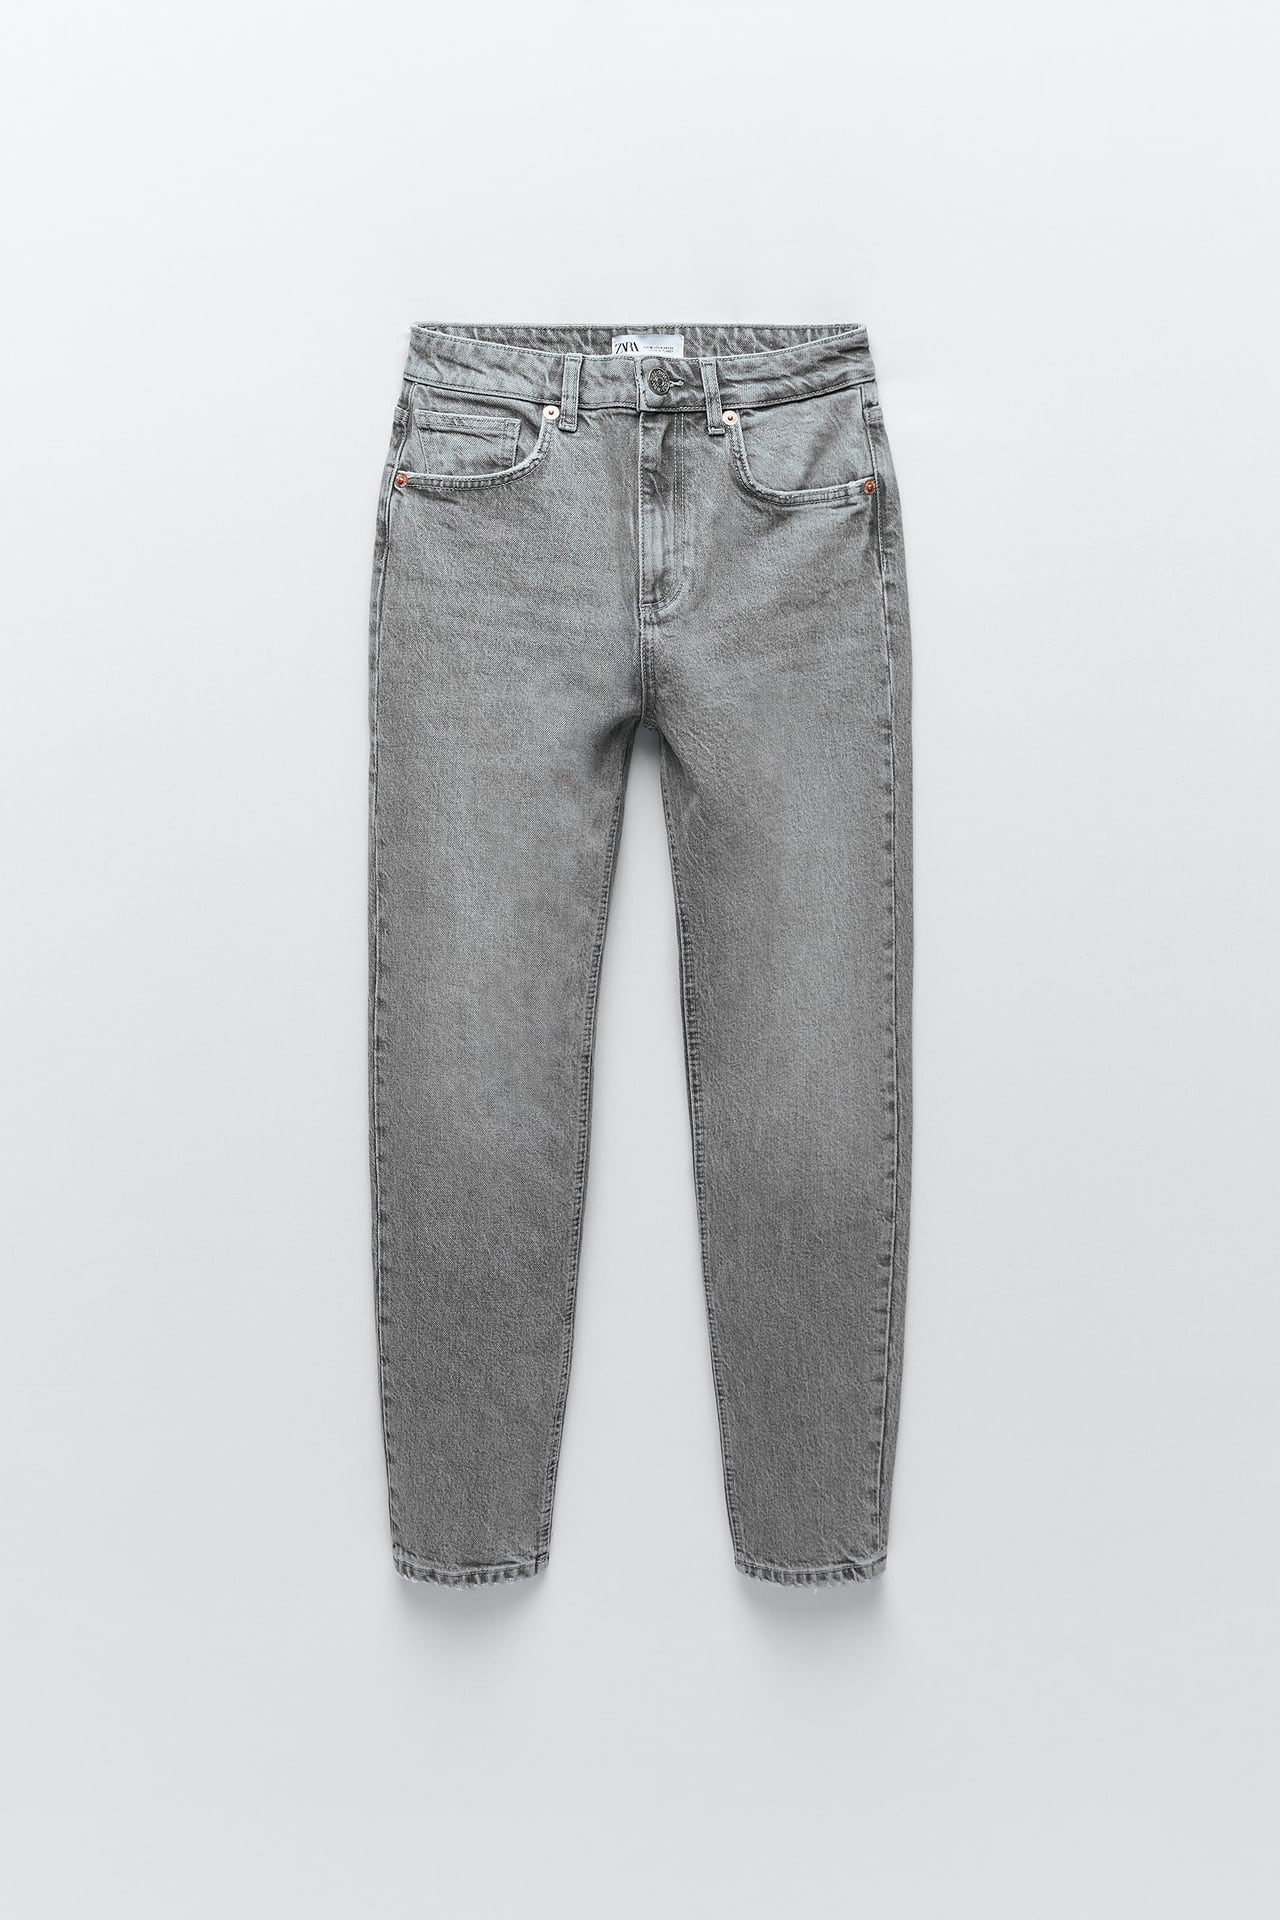 Zara slim fit high rise jeans